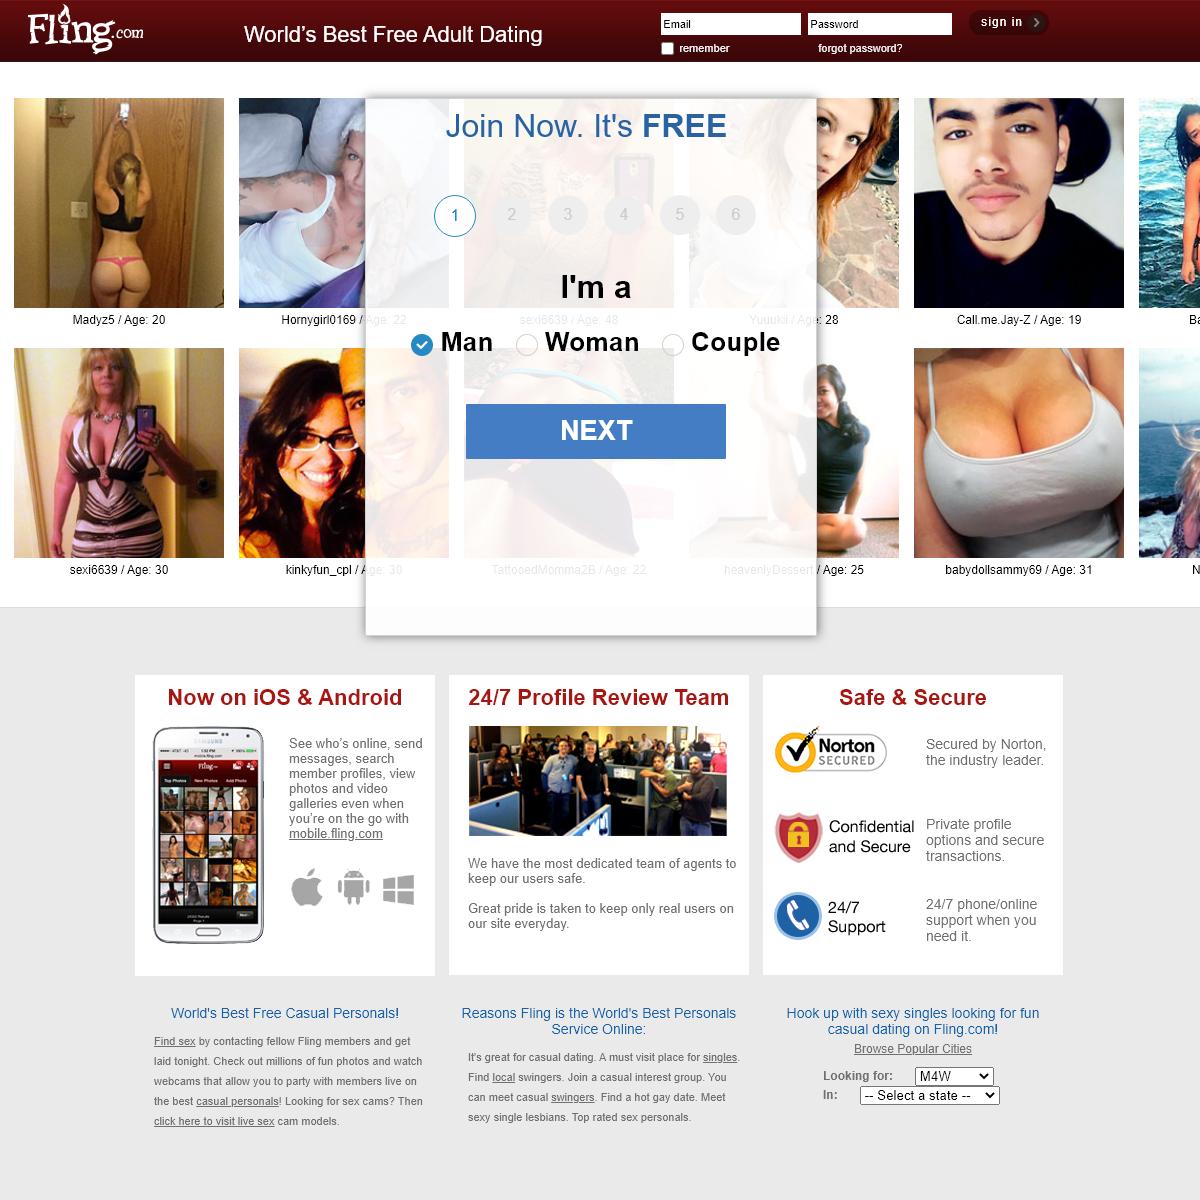 A complete backup of fling.com